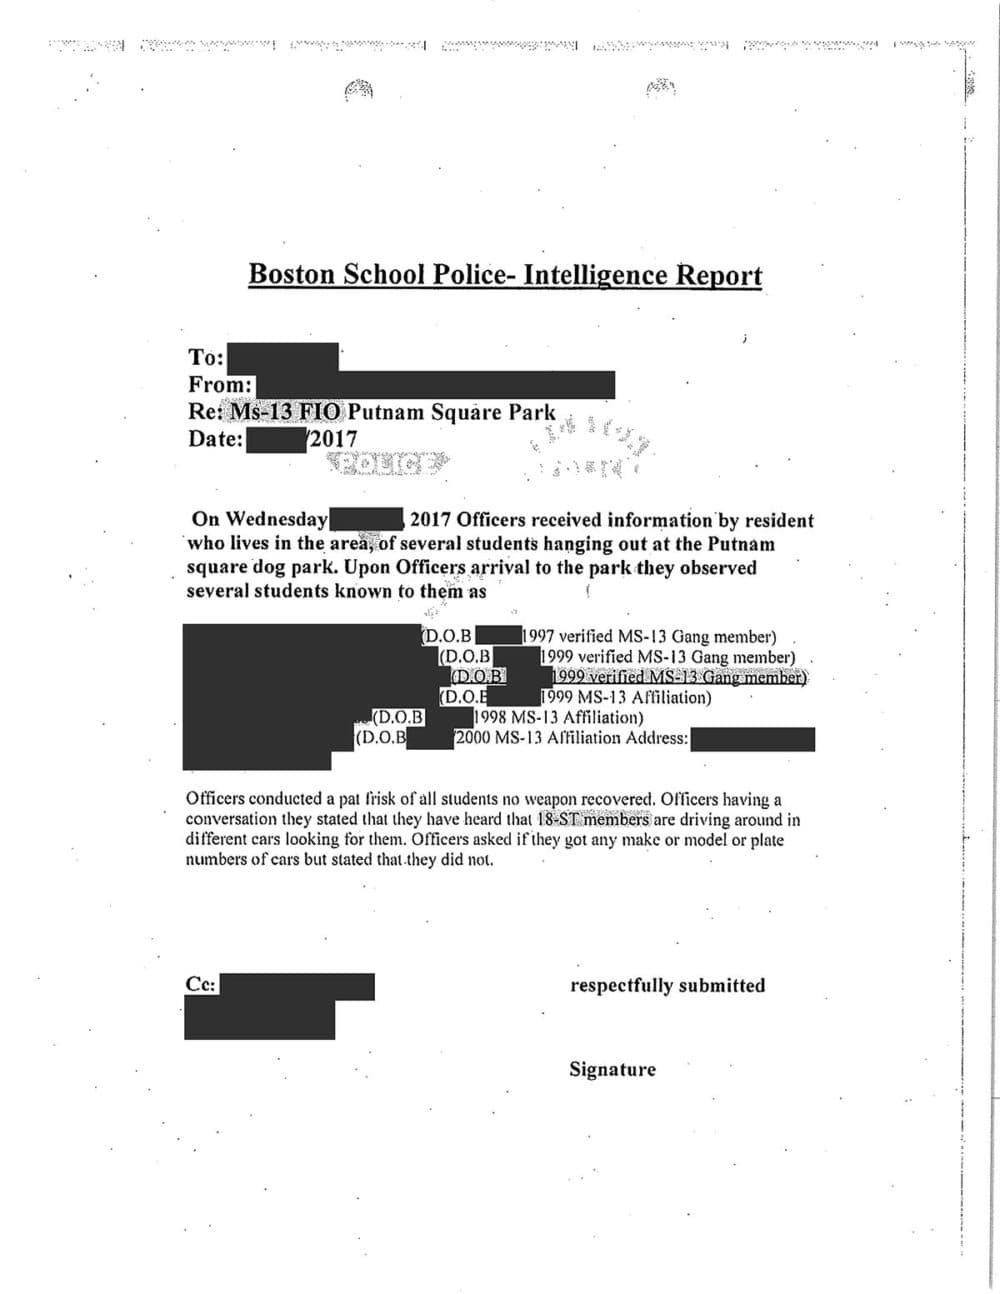 La Policía Escolar de Boston presentó este llamado &quot;informe de inteligencia&quot; en el que se detalla el &quot;cacheo&quot; de estudiantes fuera de la propiedad escolar en East Boston. Los detalles de identificación en el informe han sido ocultados por WBUR.